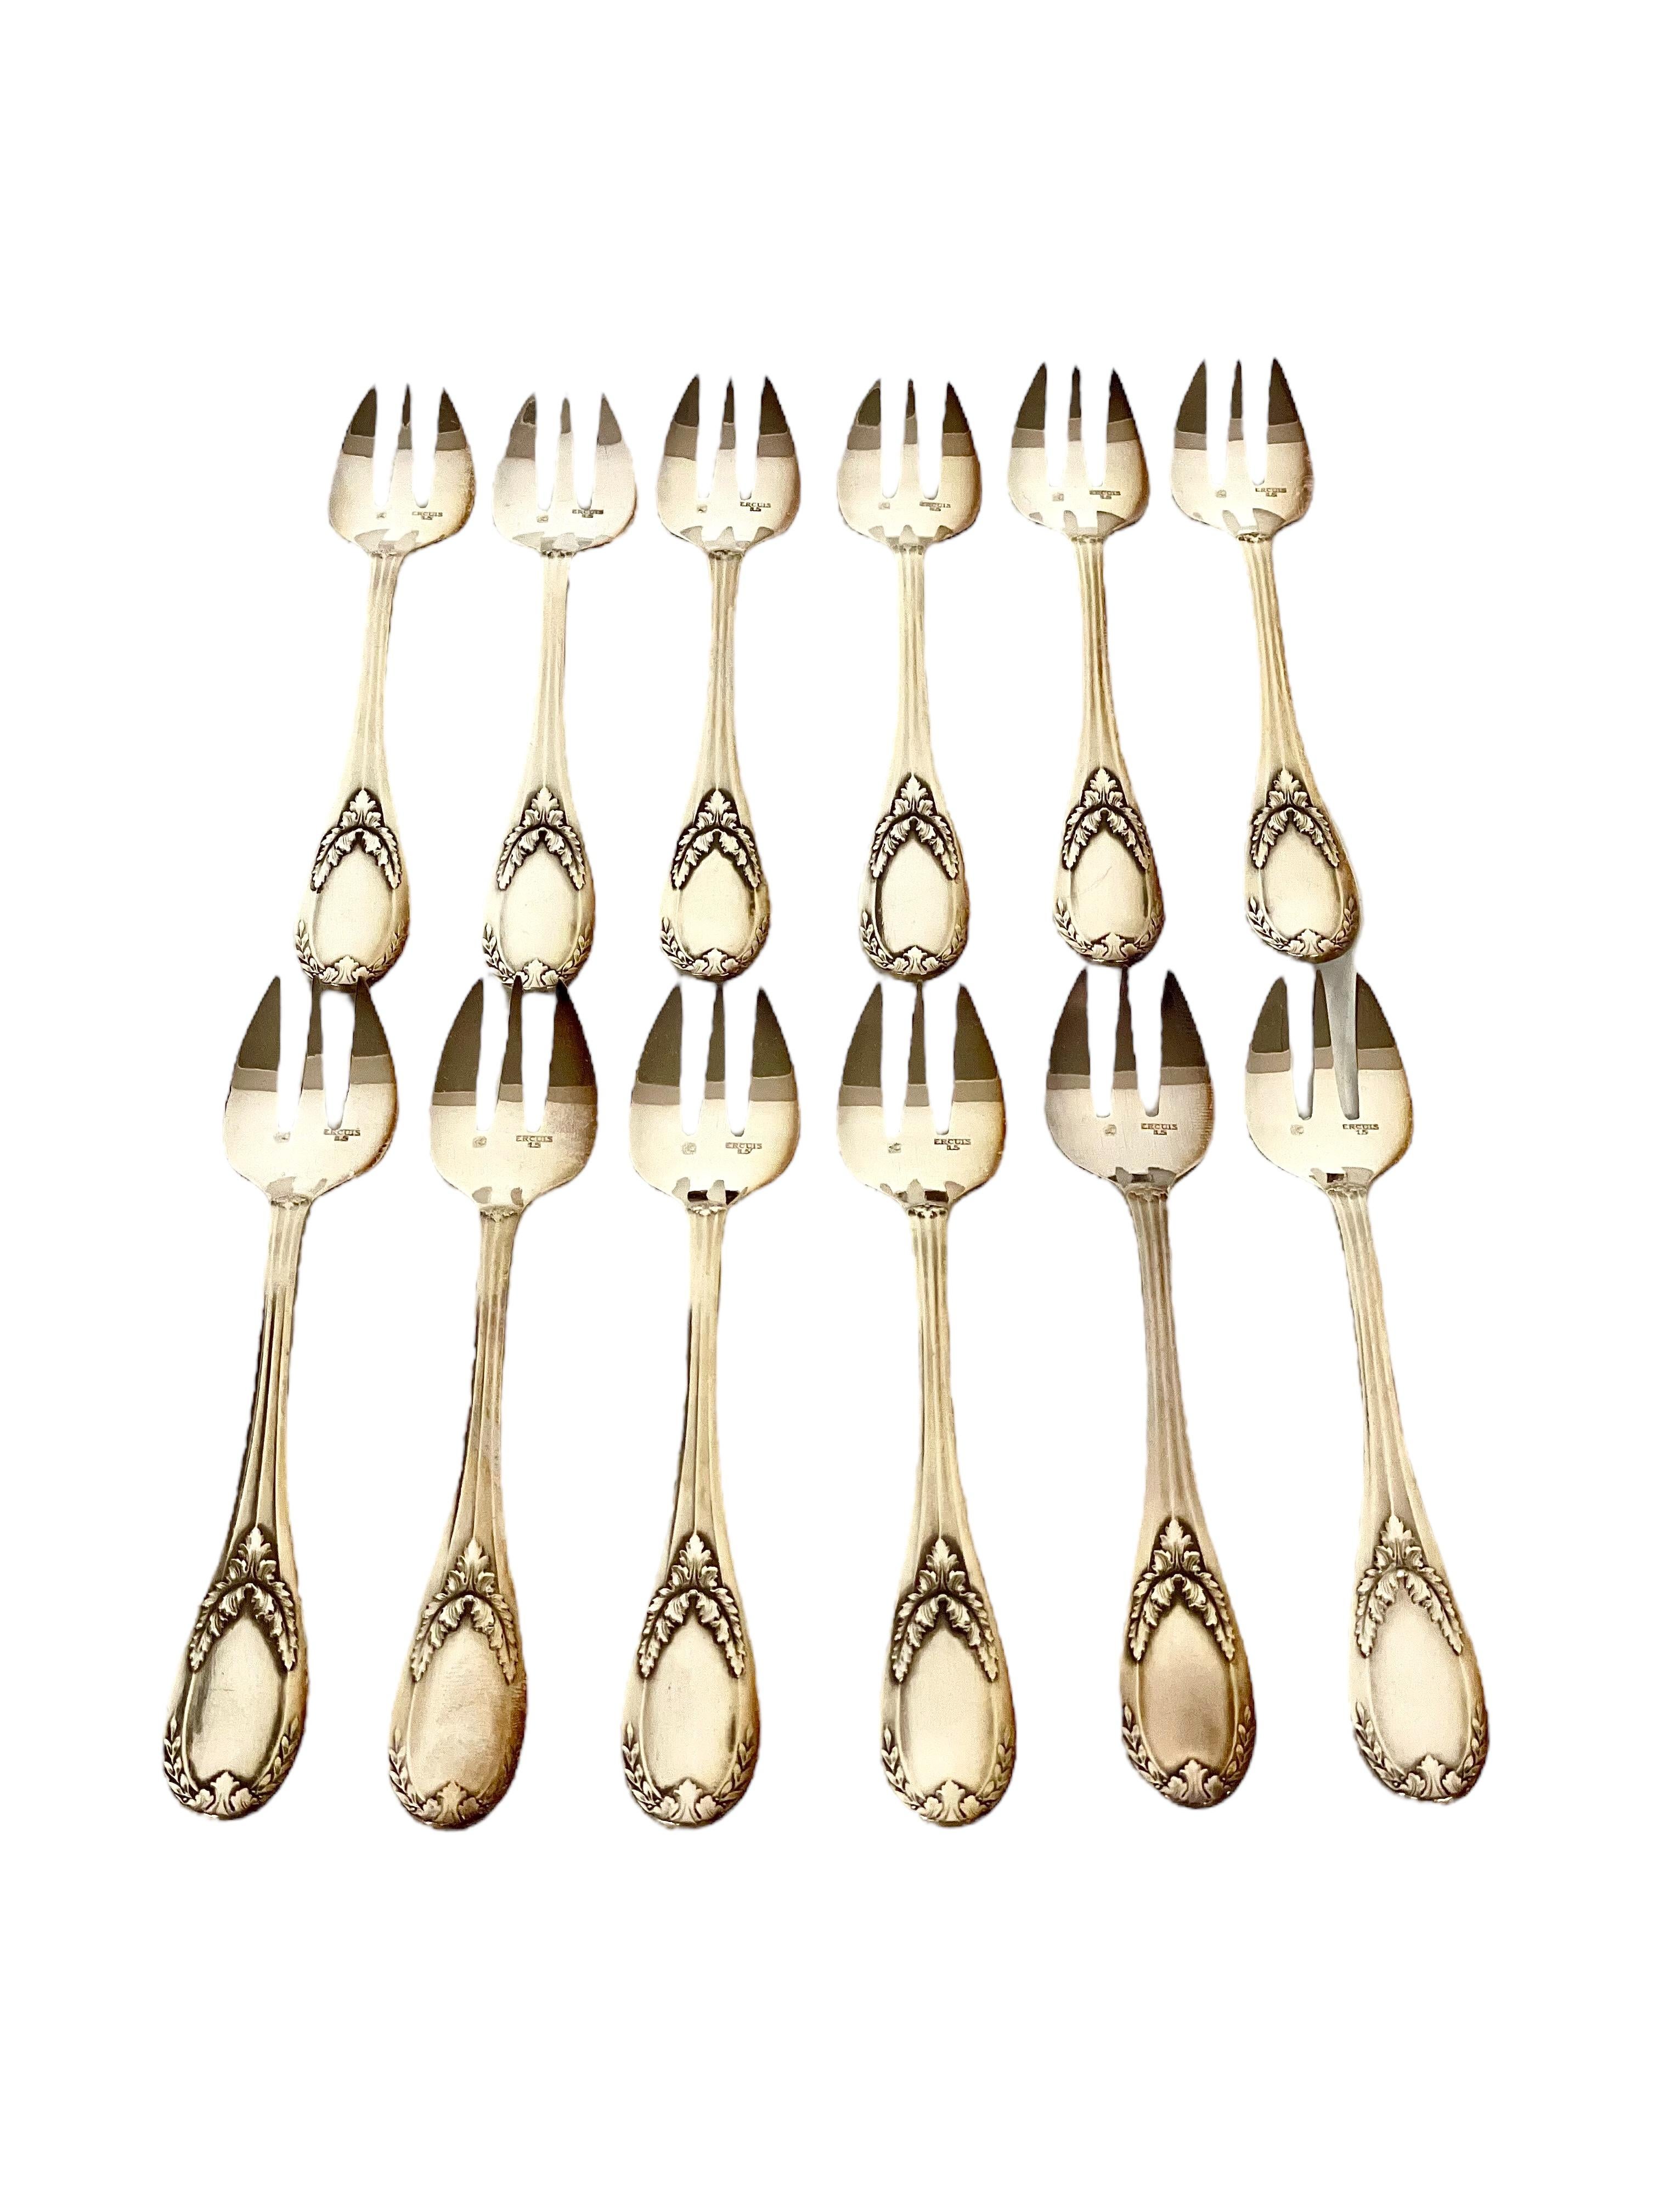 Set of 12 Ercuis Oyster Forks in Original Presentation Case For Sale 1